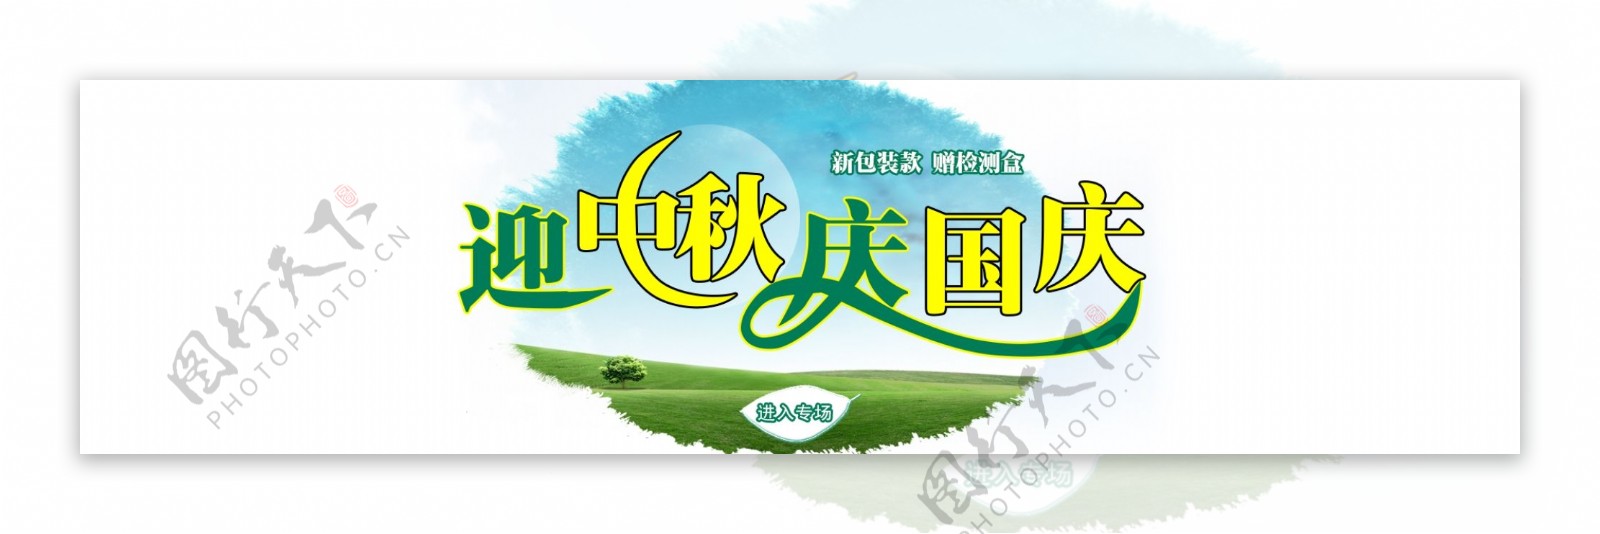 中秋banner